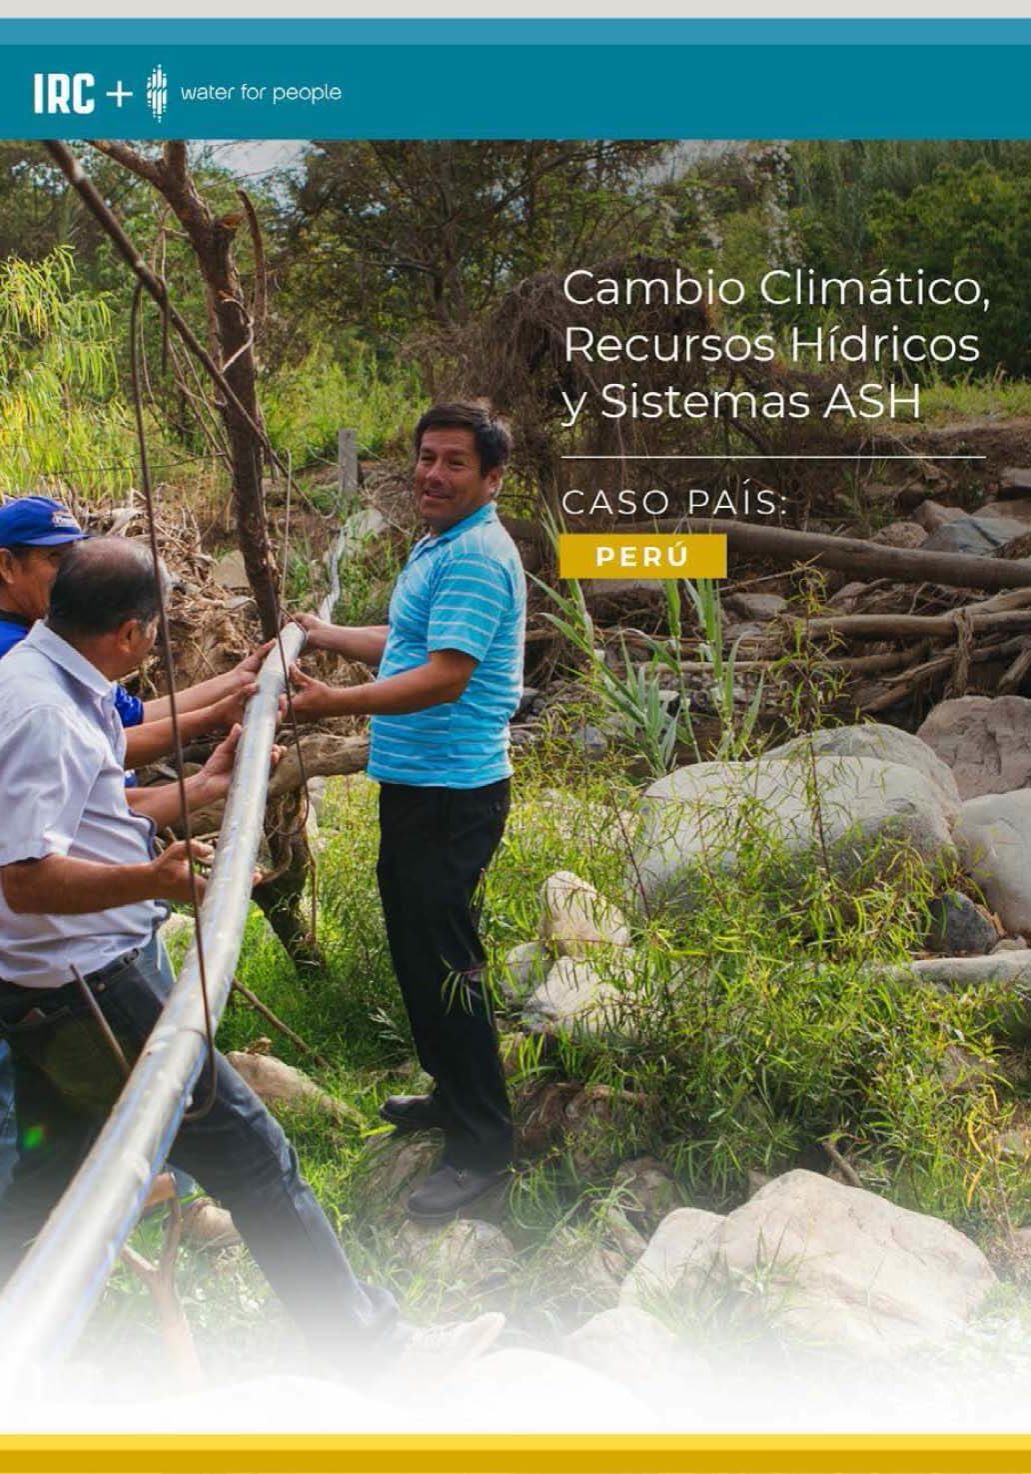 Cambio-Climatico-GRH-y-ASH-en-Peru-Perfil-de-Pais-ago-2021